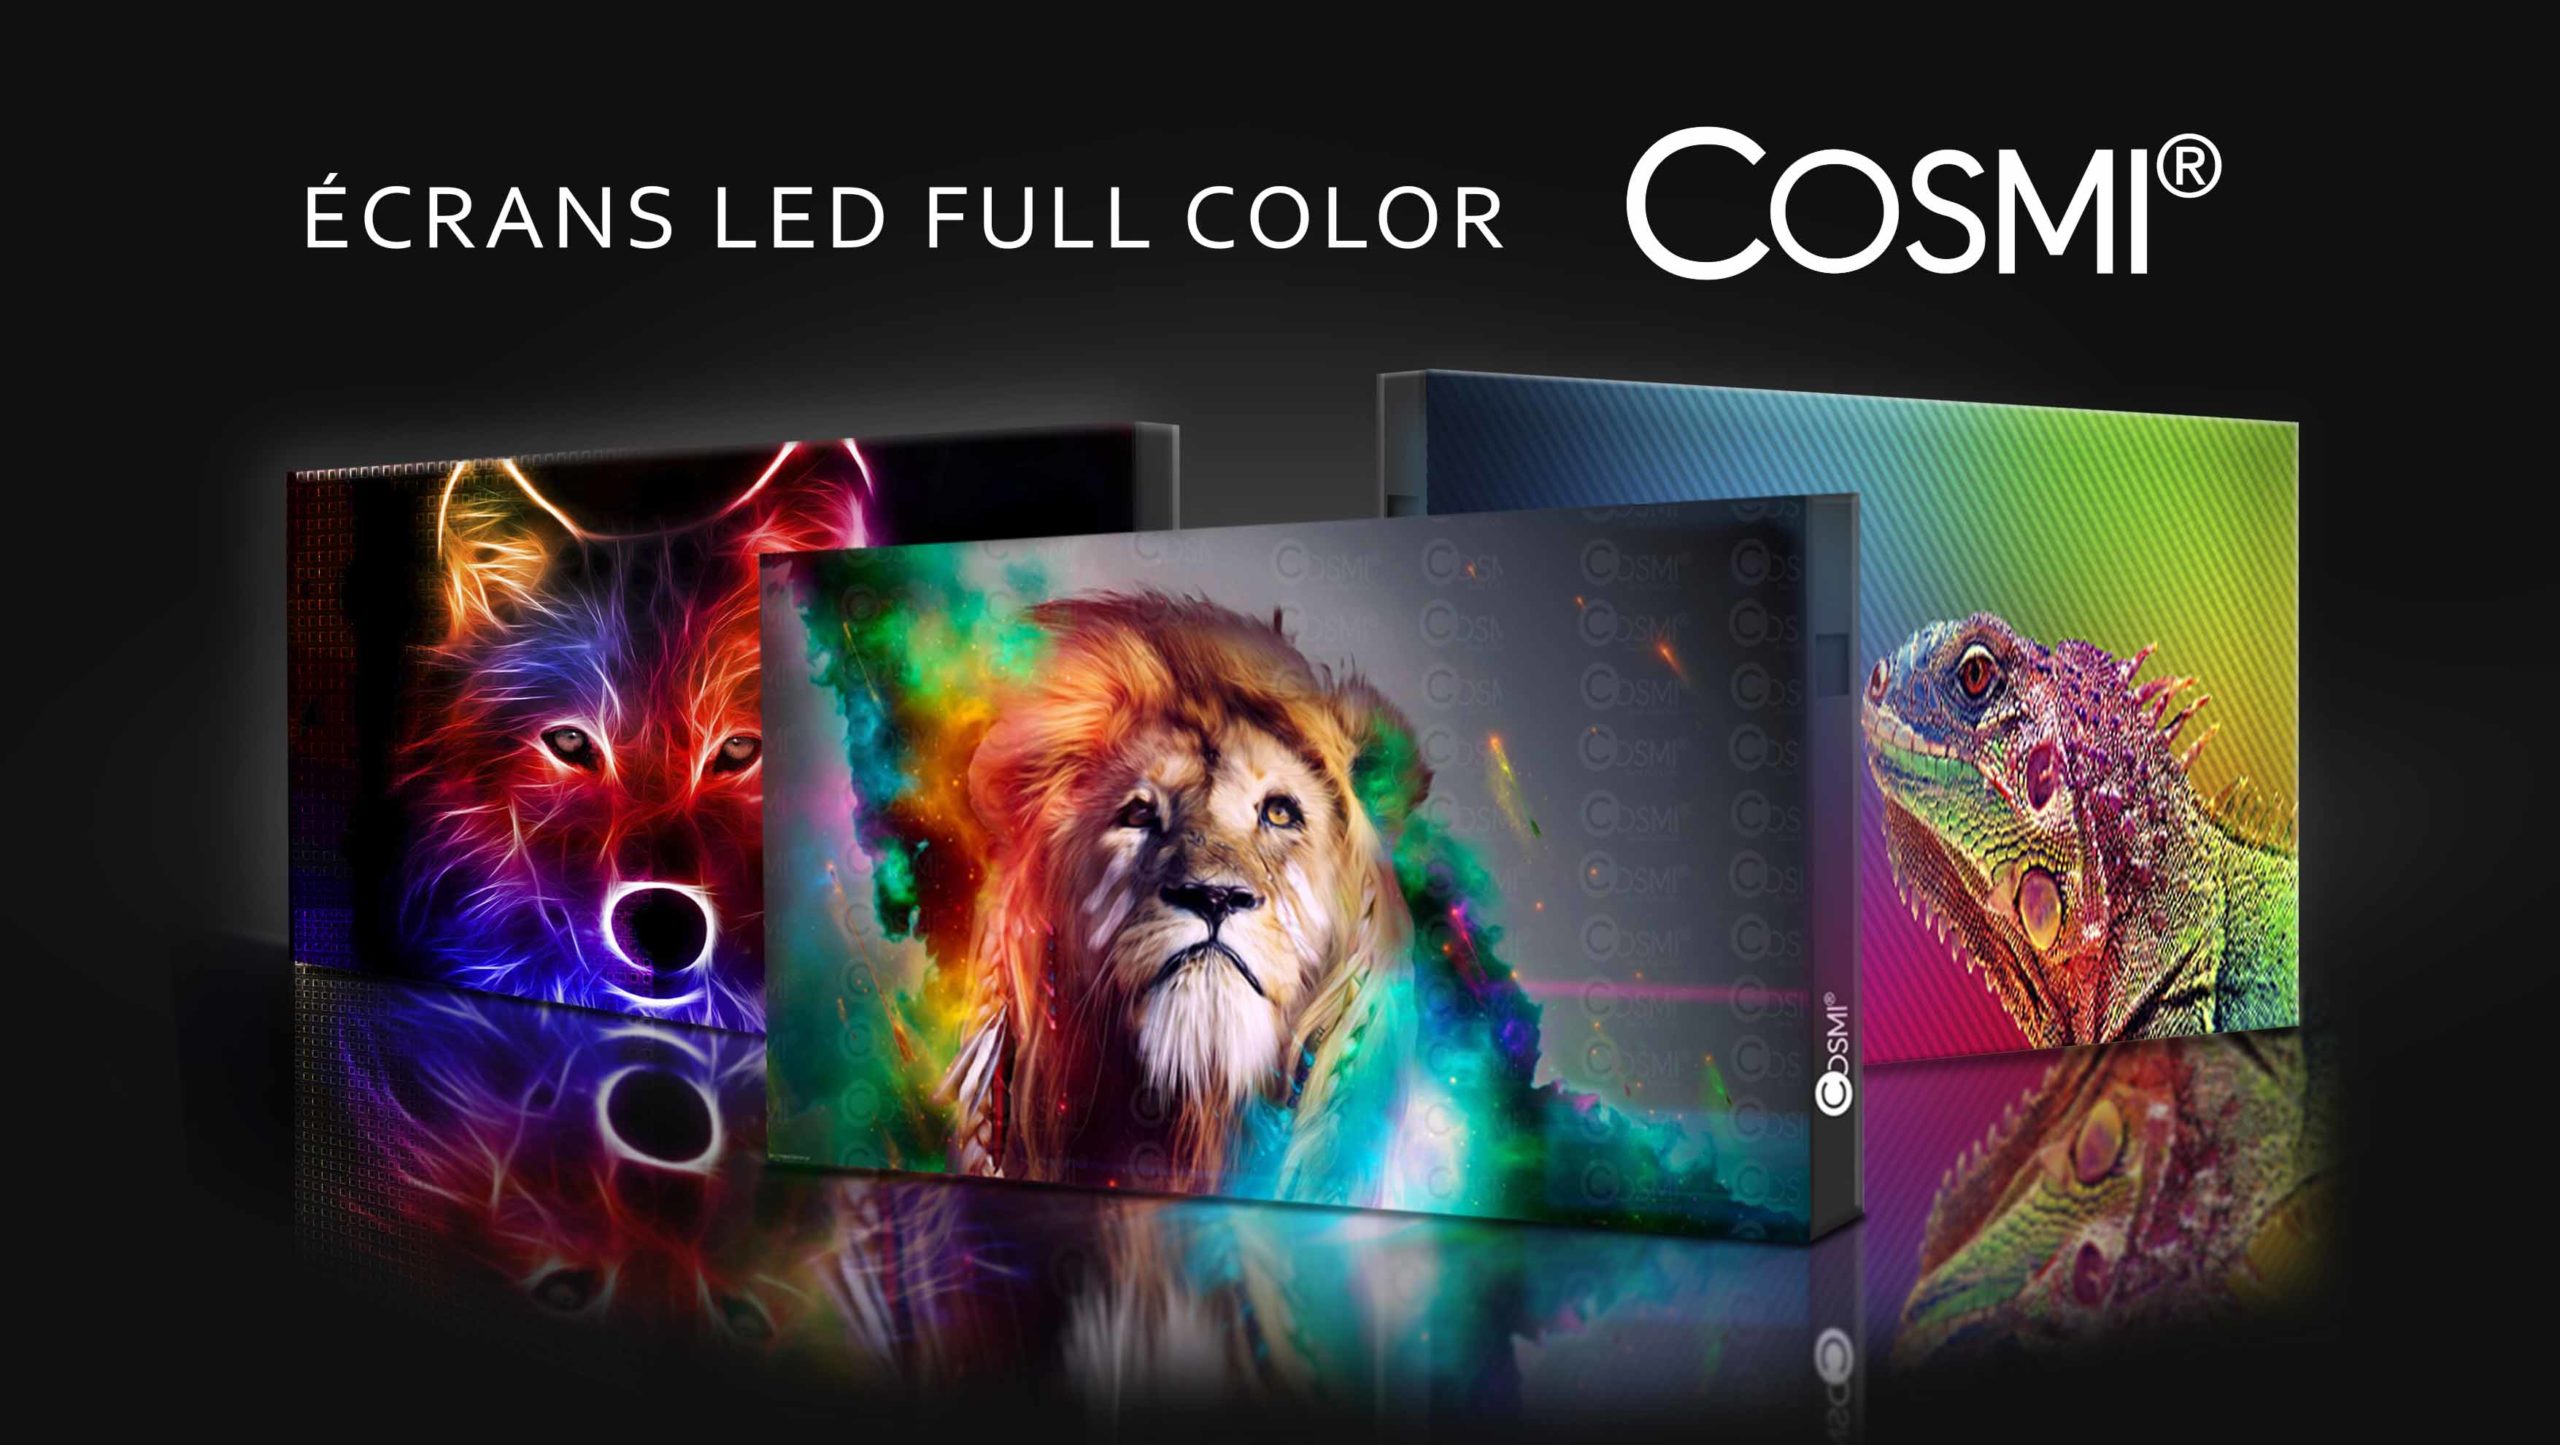 ecrans-led-full-color-cosmi-agr-display Ensemble d'écrans LED de la marque COSMI Full Color mis à disposition par AGR Display en France